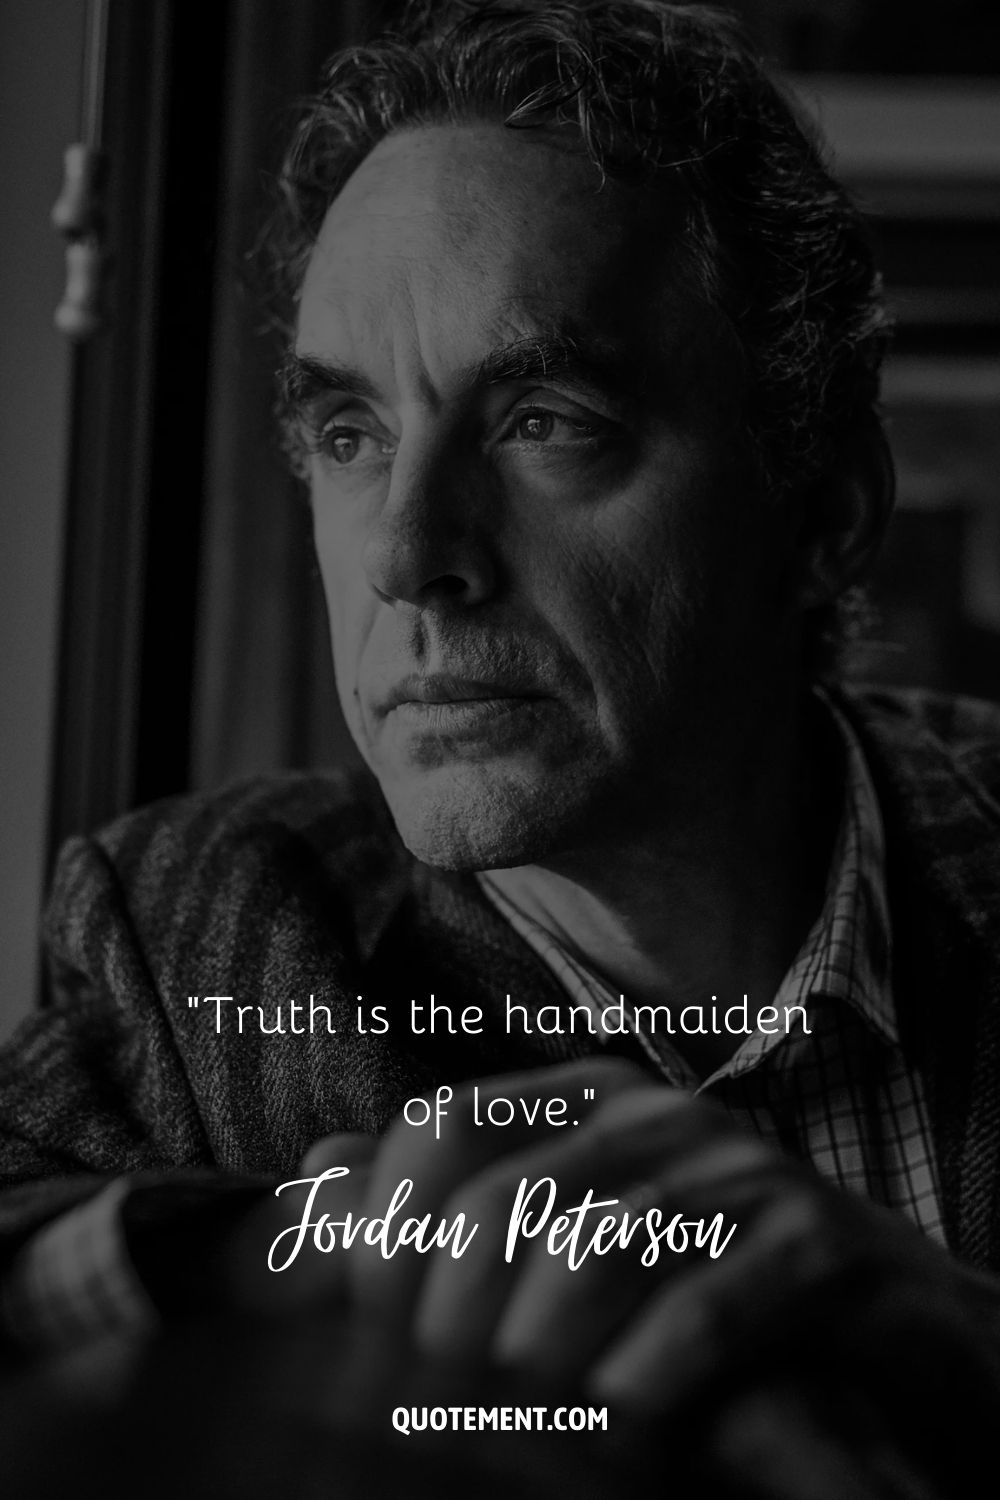 Cita de Jordan Peterson sobre la verdad.